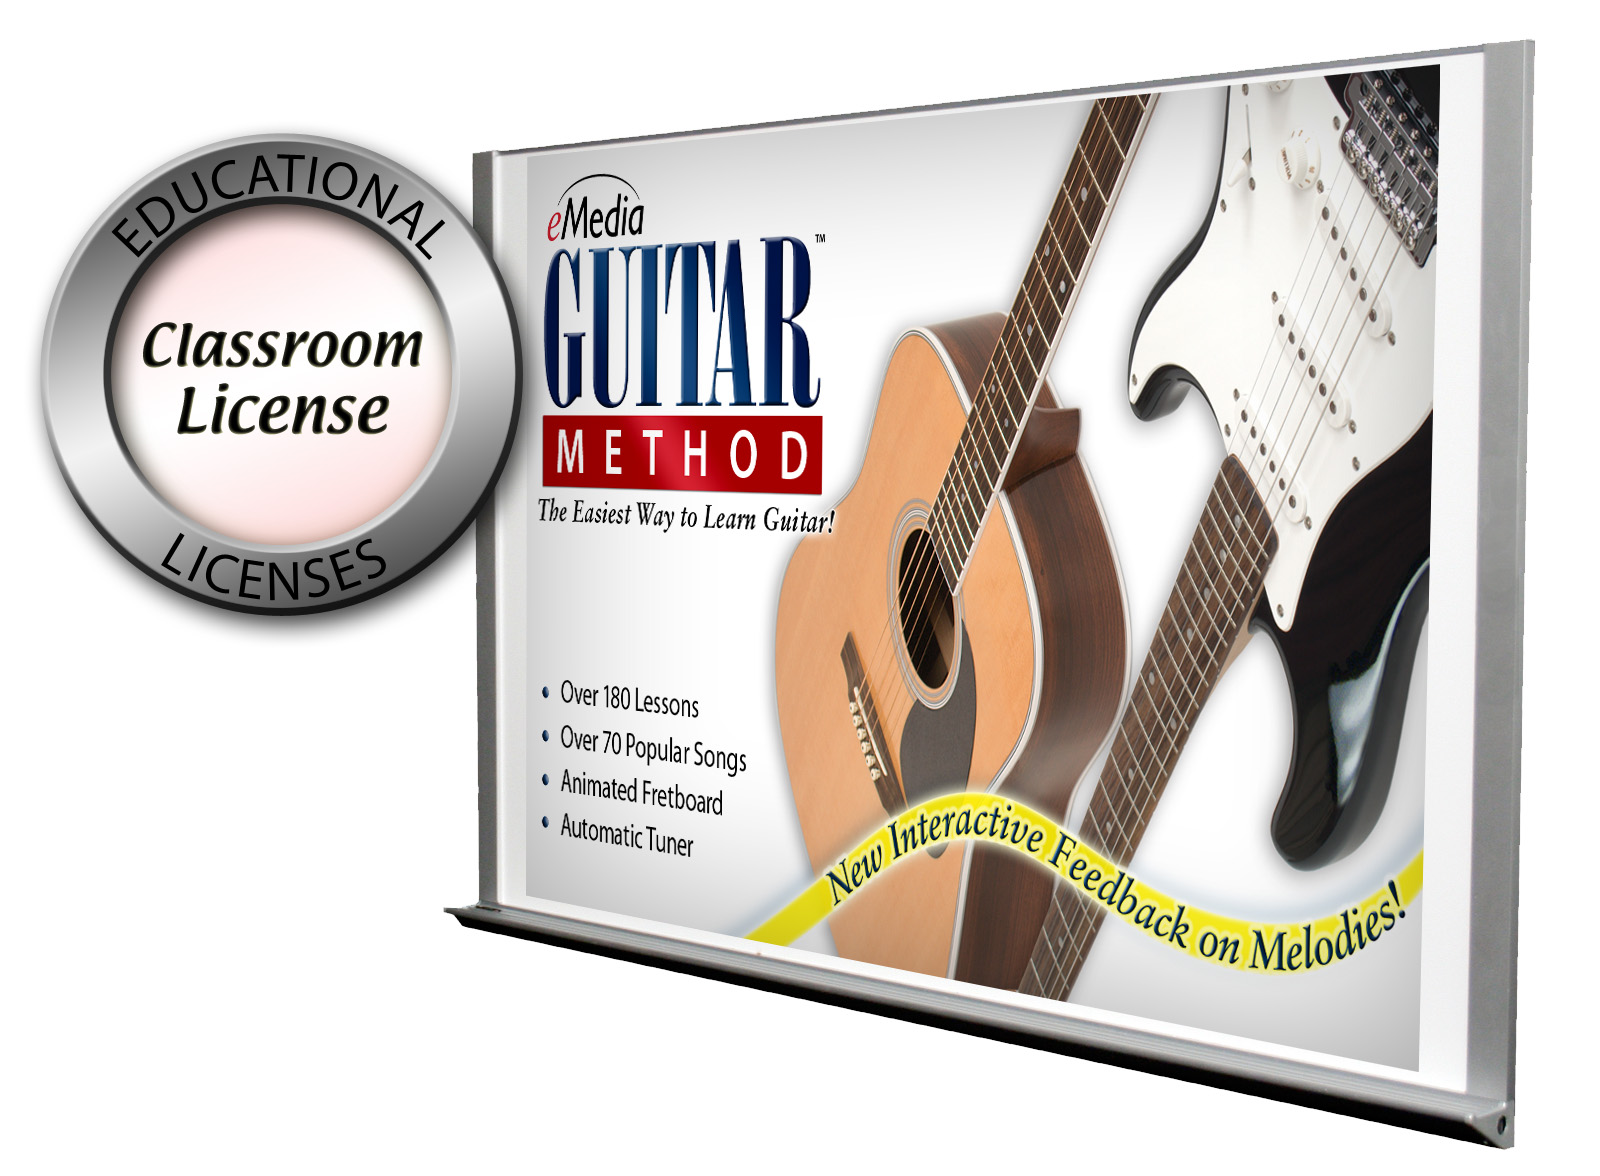 emedia guitar method 5.0 download